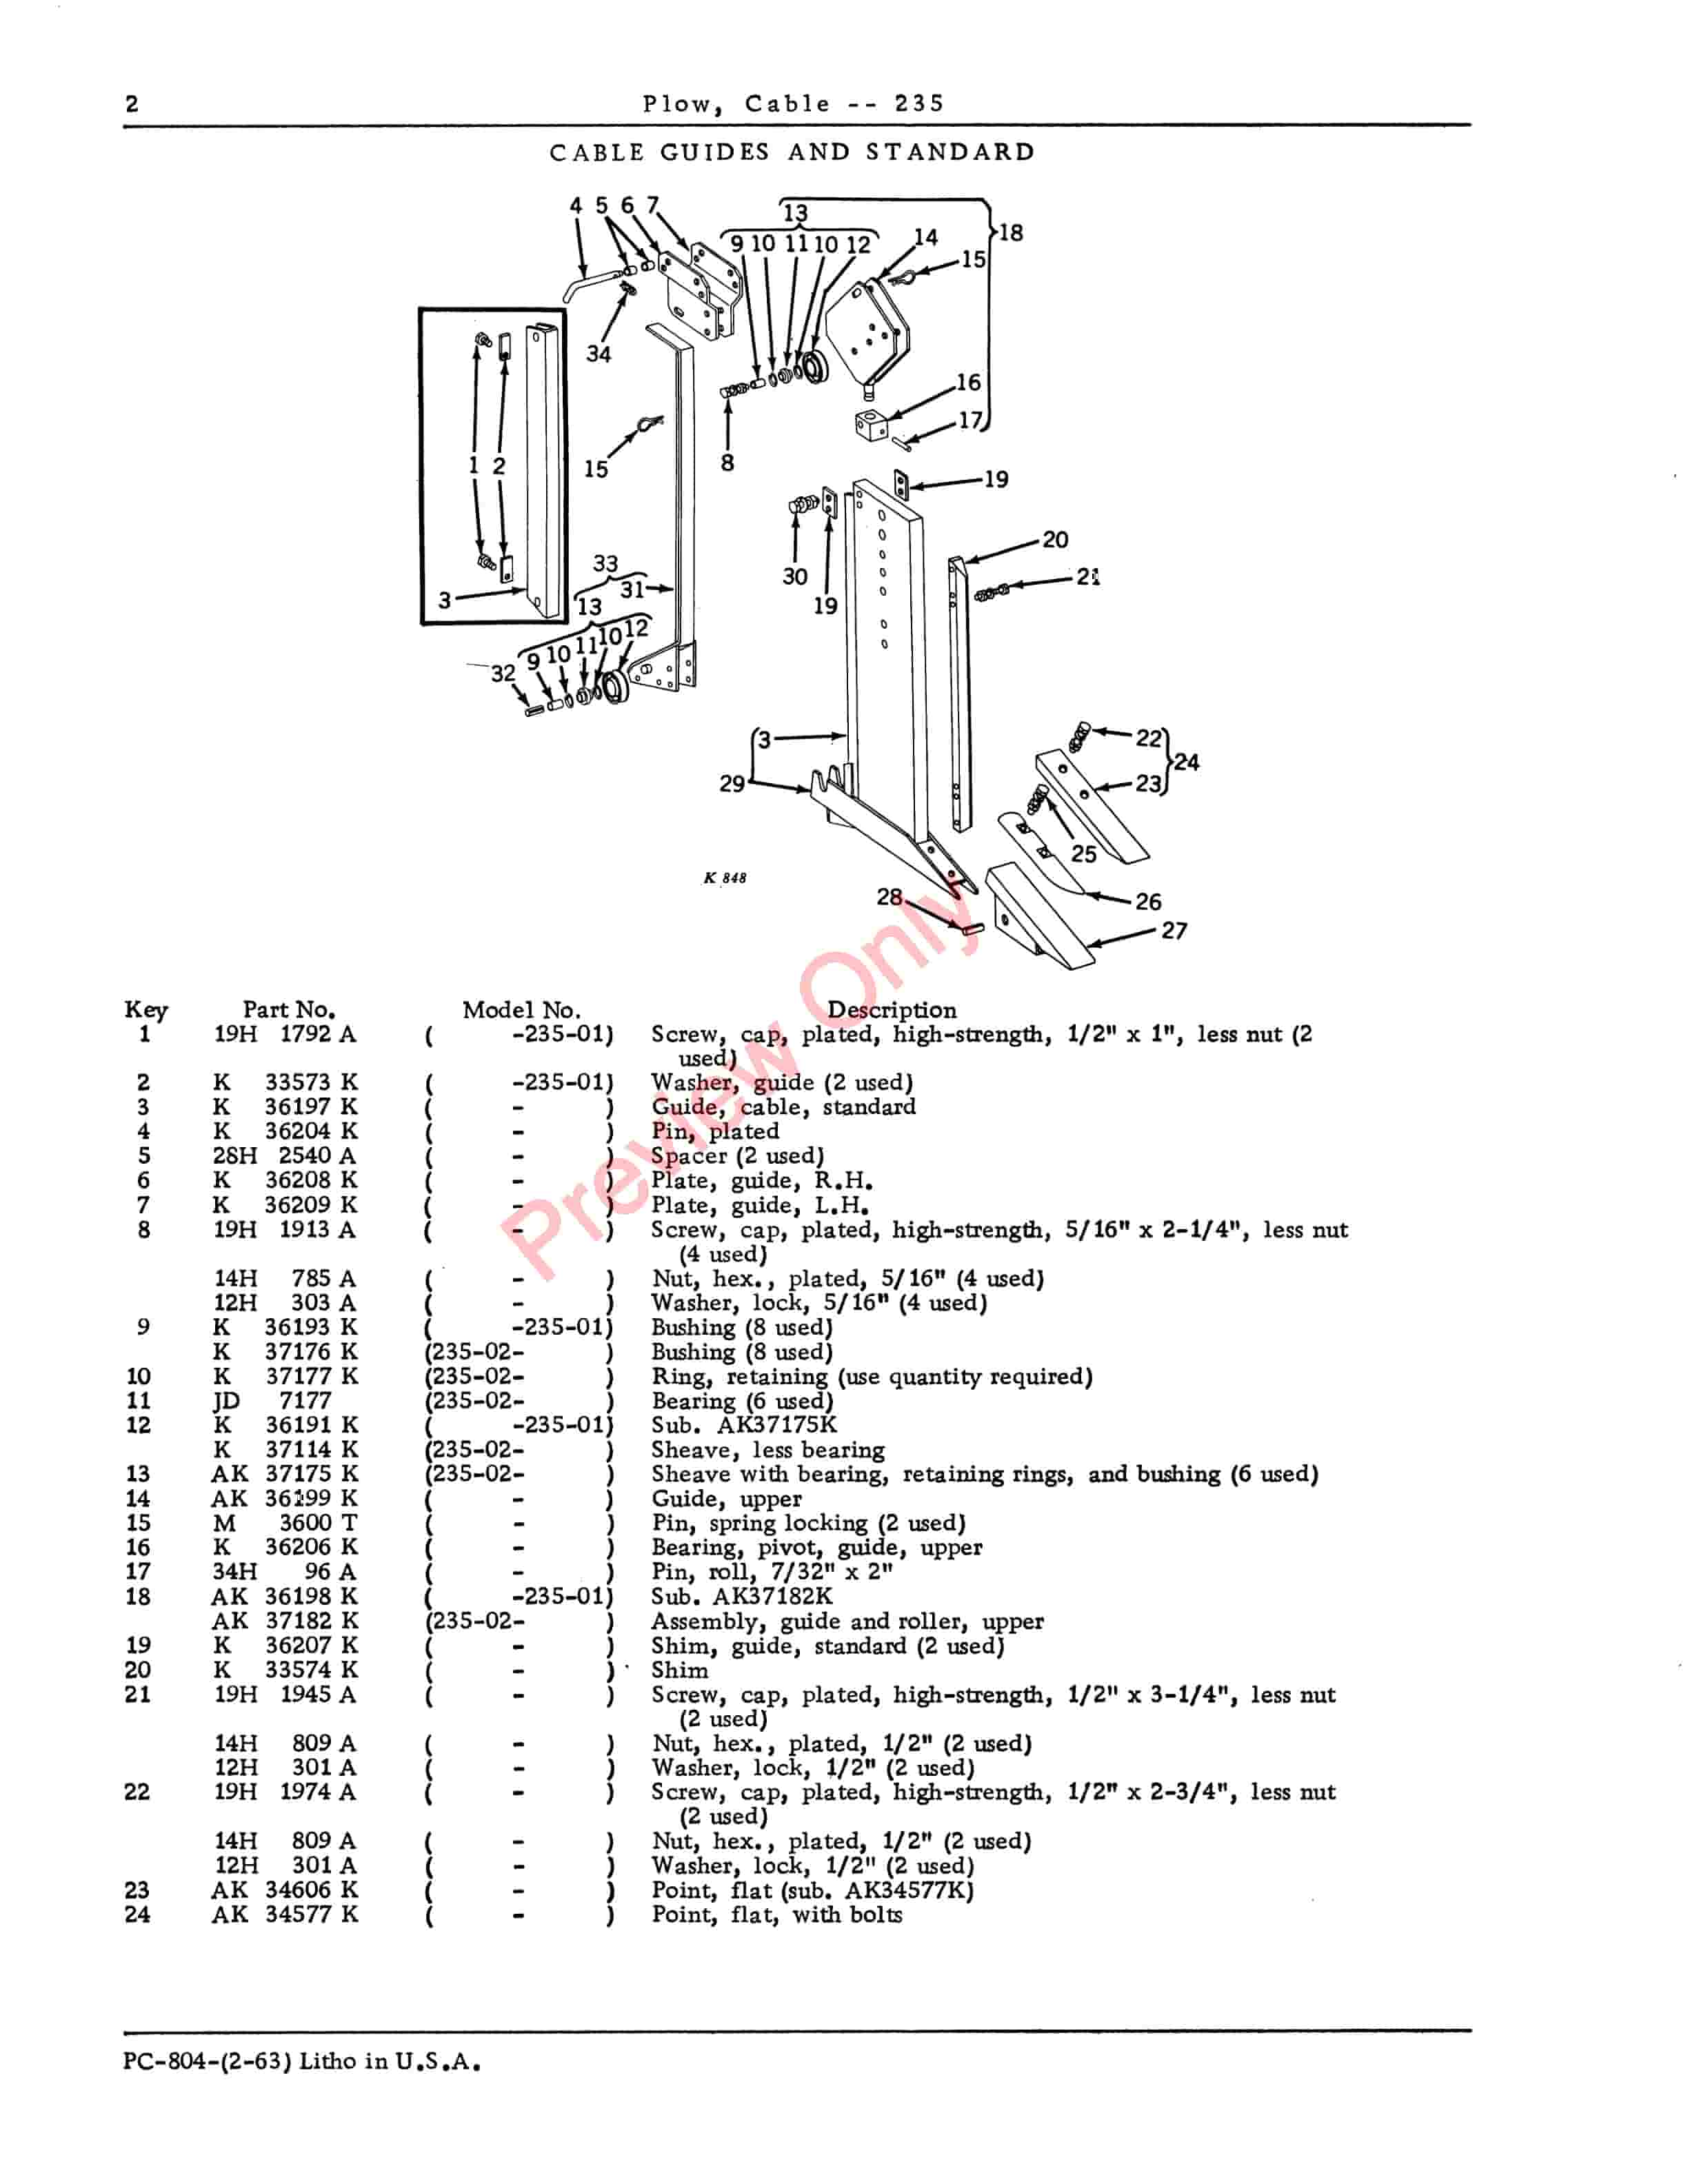 John Deere 235 Cable Plow Parts Catalog PC804 01FEB63-4